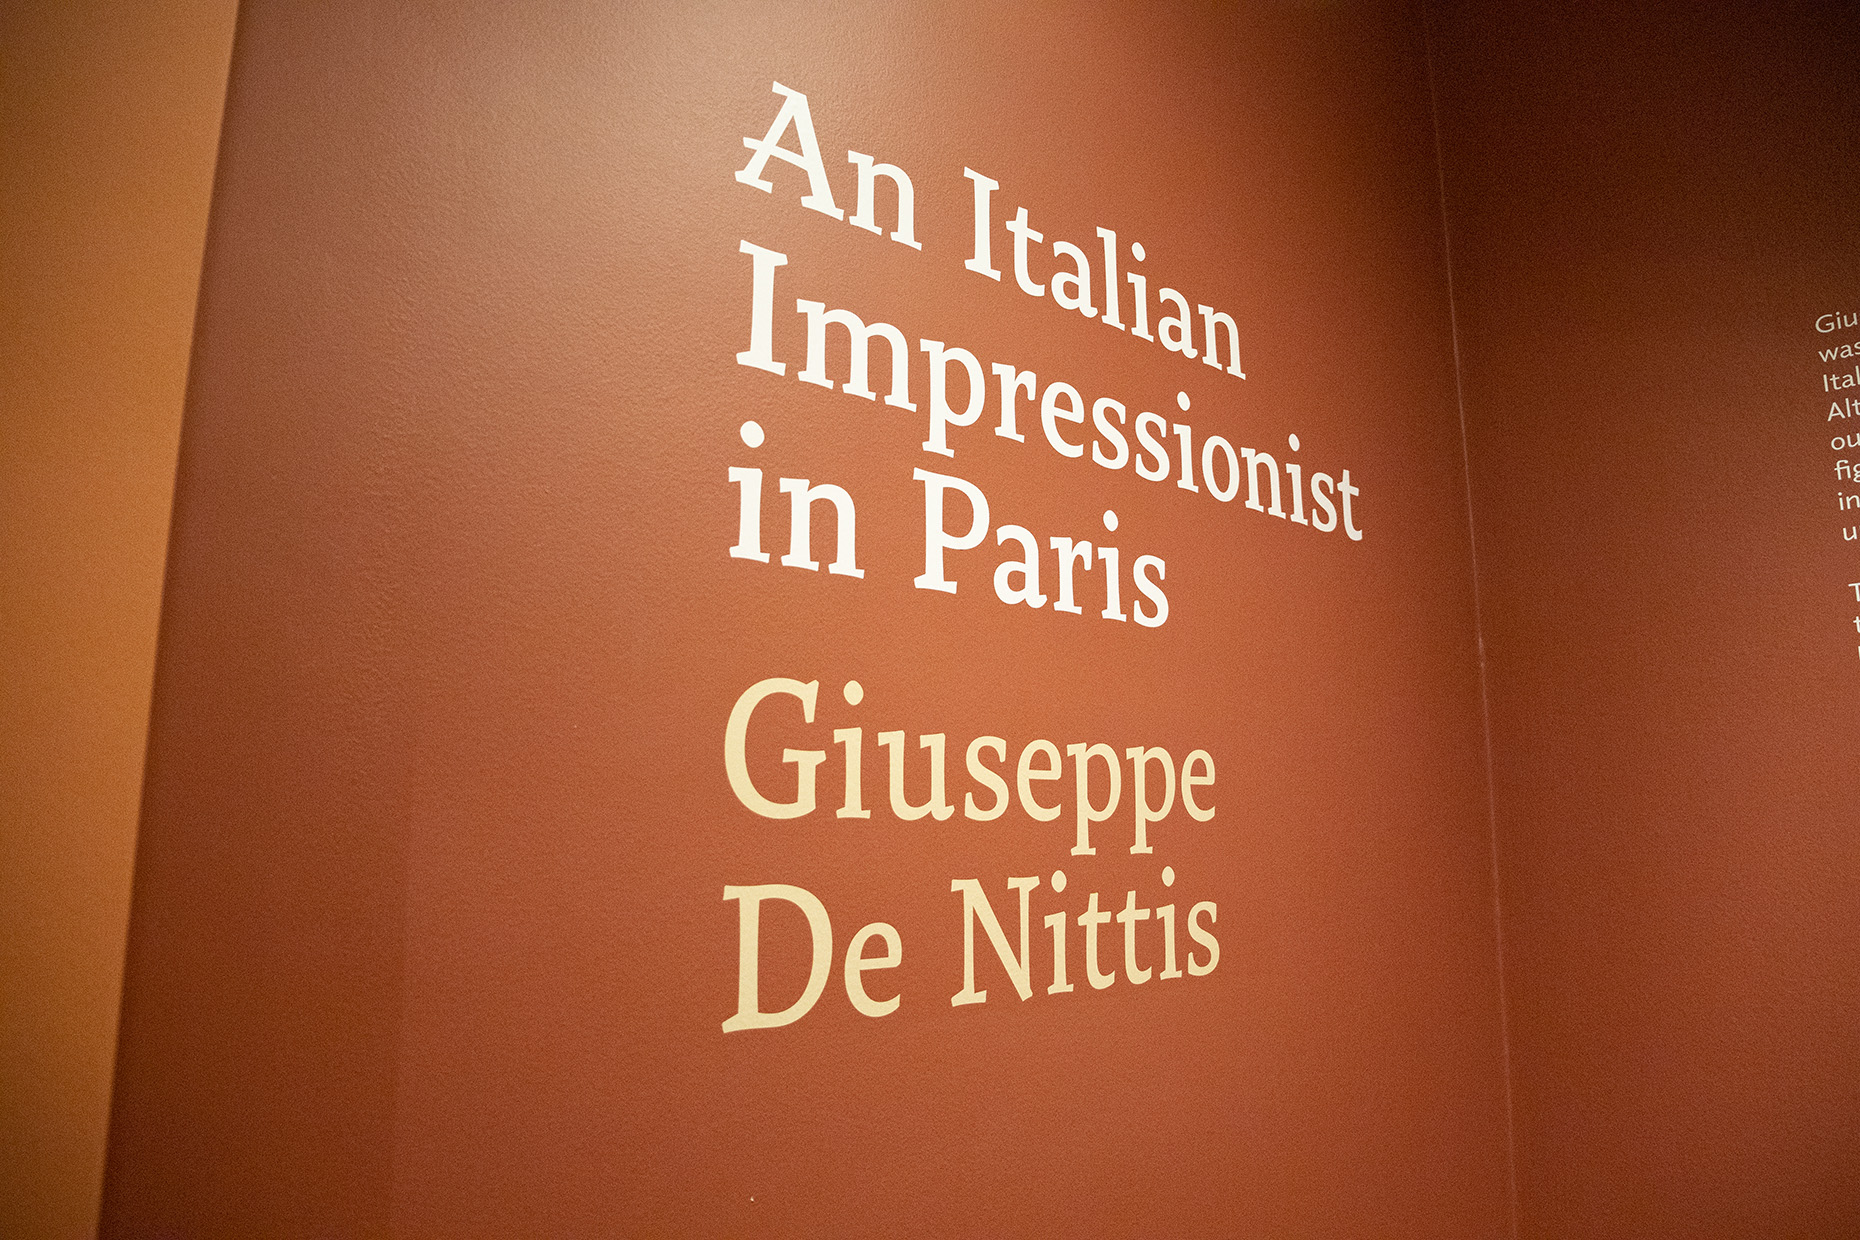 Galleria Per il Washington Post la mostra su Giuseppe De Nittis tra le dieci migliori mostre allestite nel 2023 negli Stati Uniti - Diapositiva 2 di 4